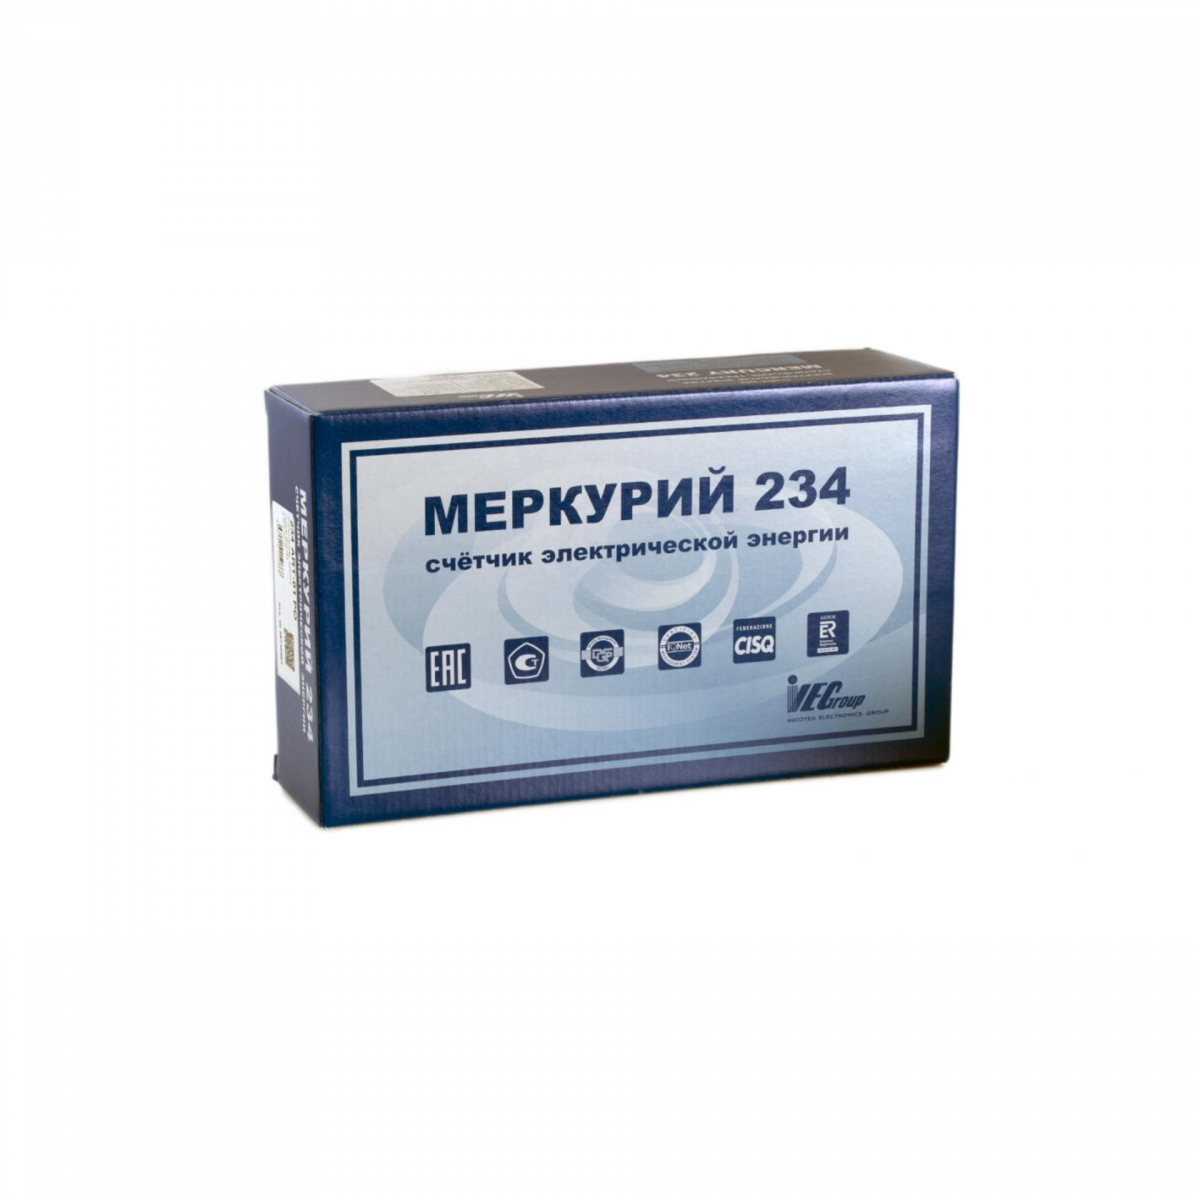 Счетчик "Меркурий" 234 ARTM-02 (D)PОBR.G 5-100А, класс точности 1,0/2,0, многотарифный, оптопорт, RS485, GSM